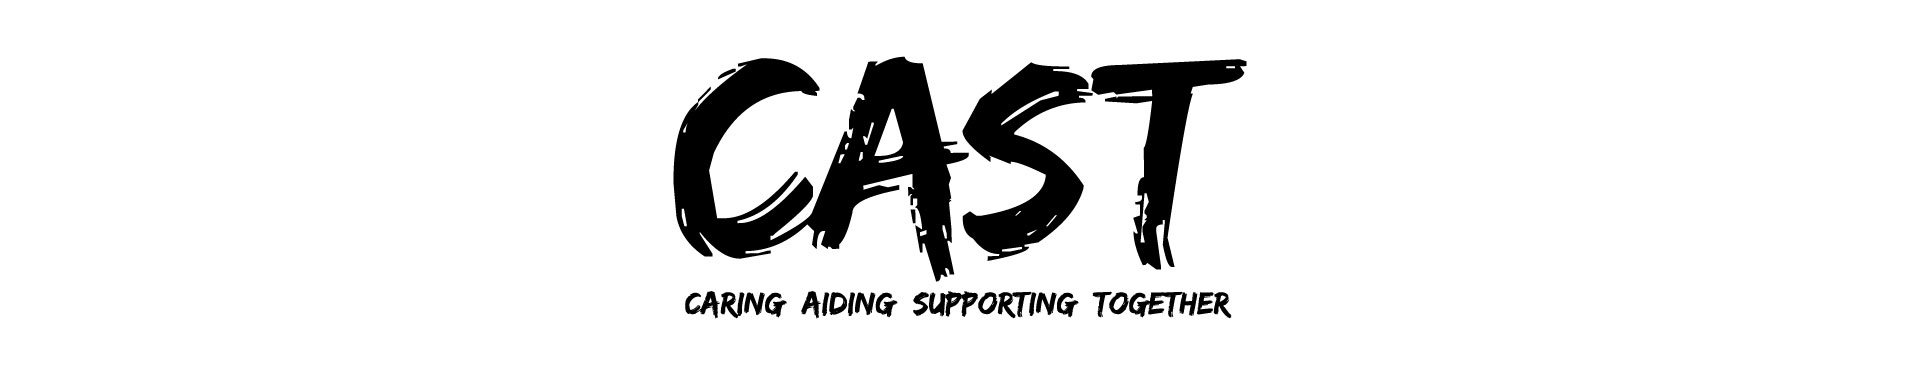 cast logo